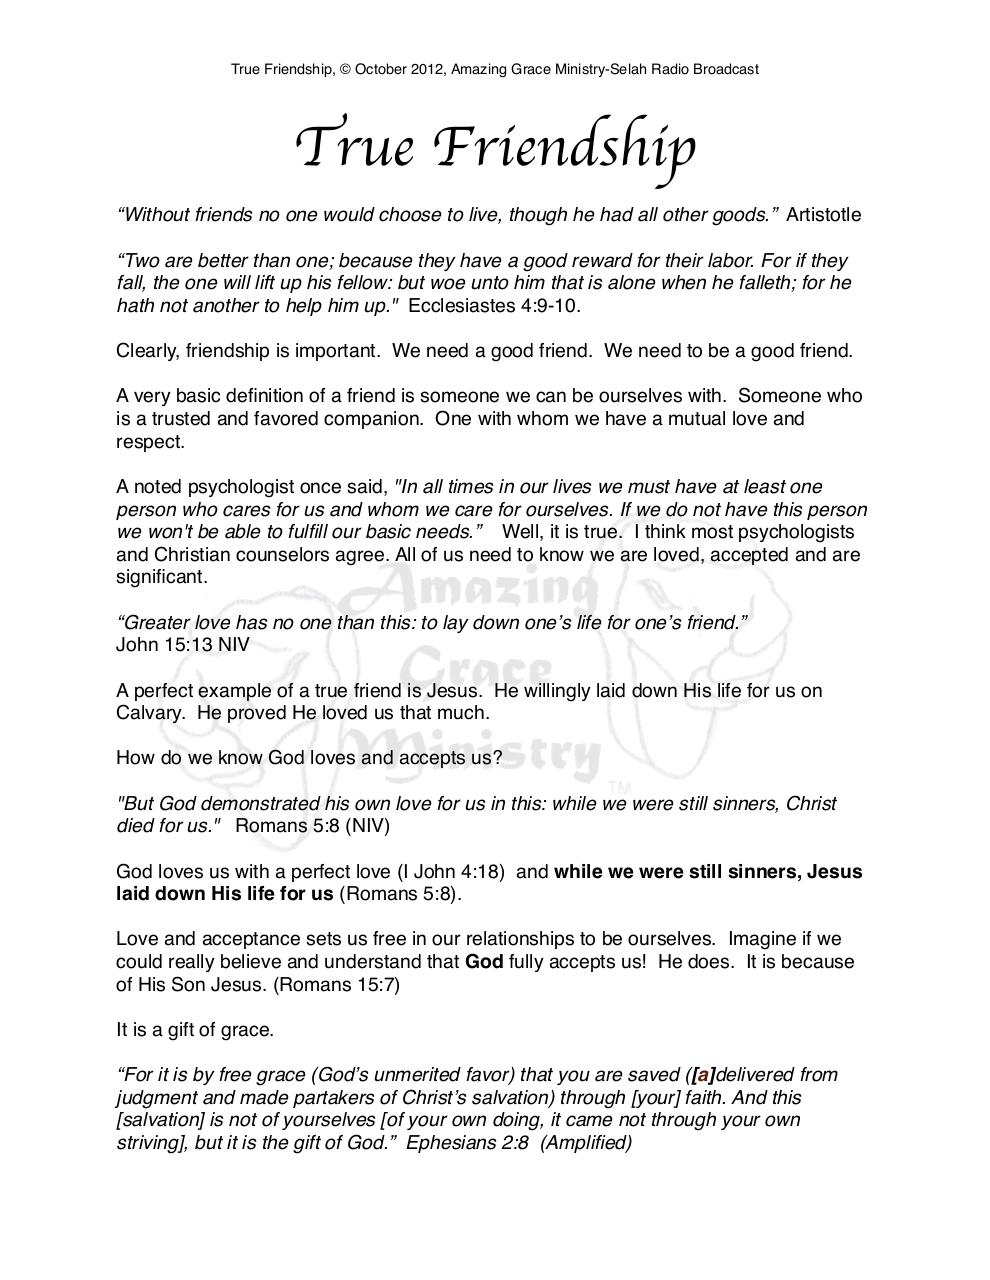 true friendship definition essay